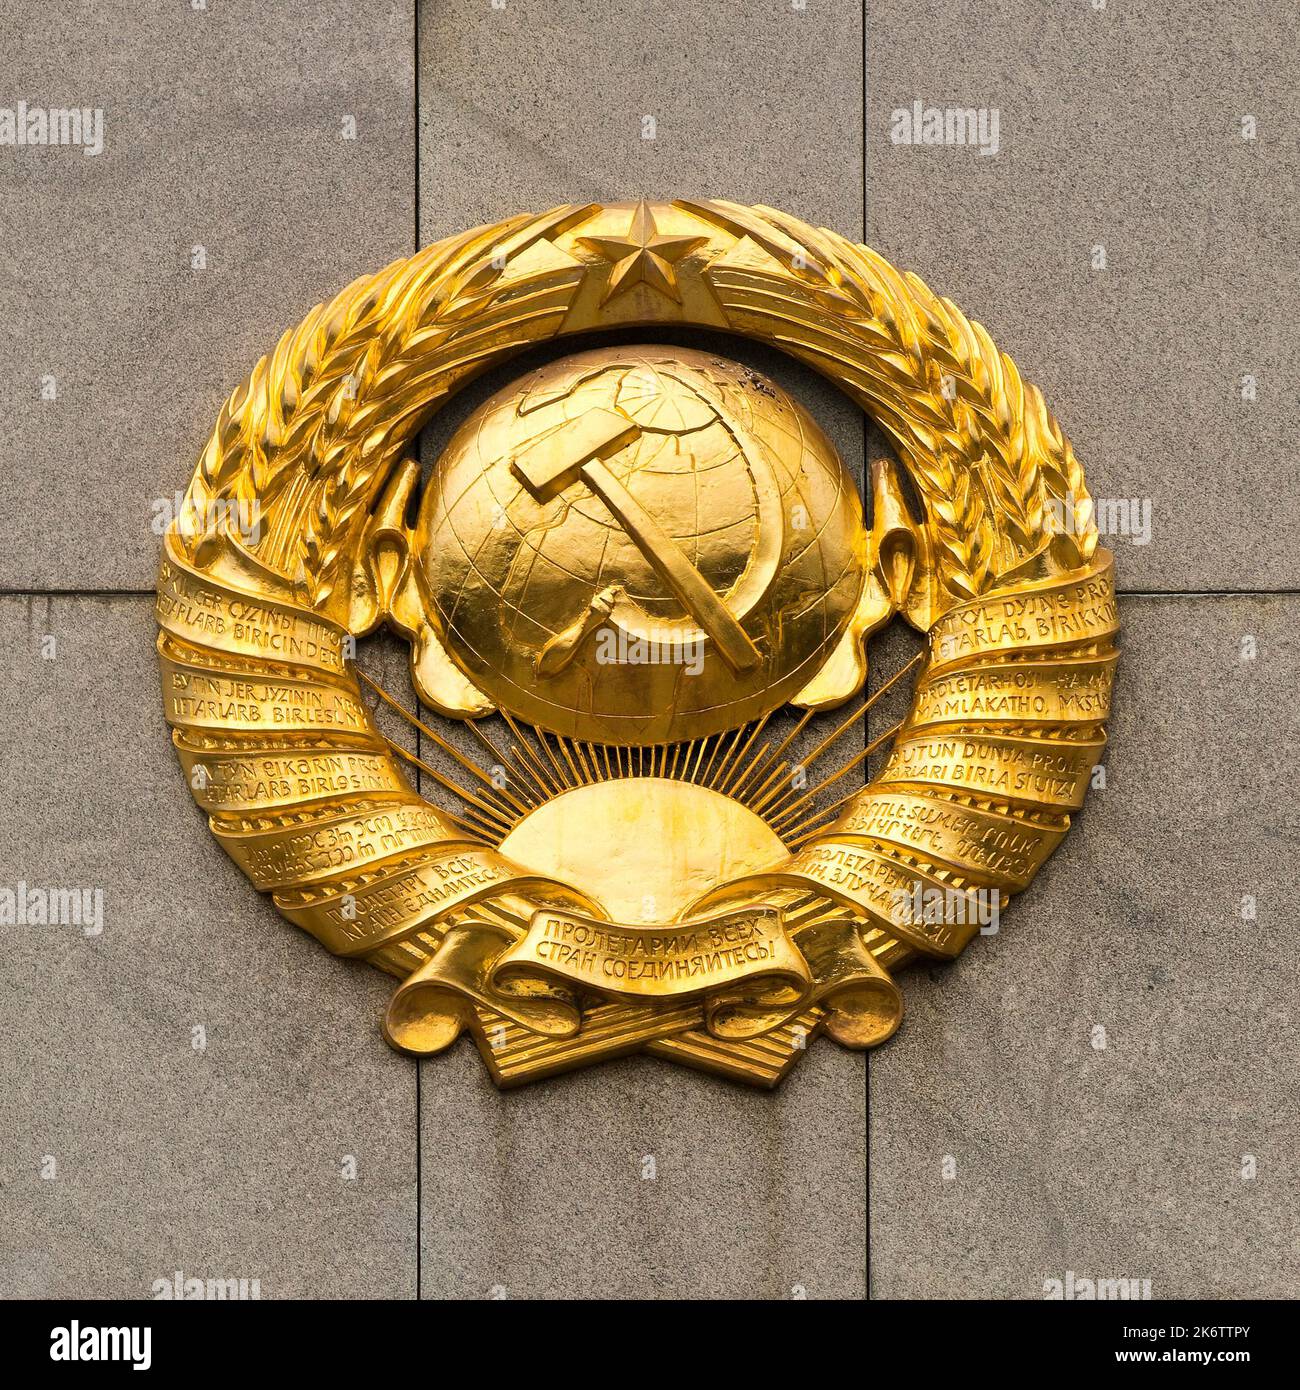 Armoiries d'or, détails, mémorial soviétique dans le Tiergarten, Berlin, Allemagne Banque D'Images